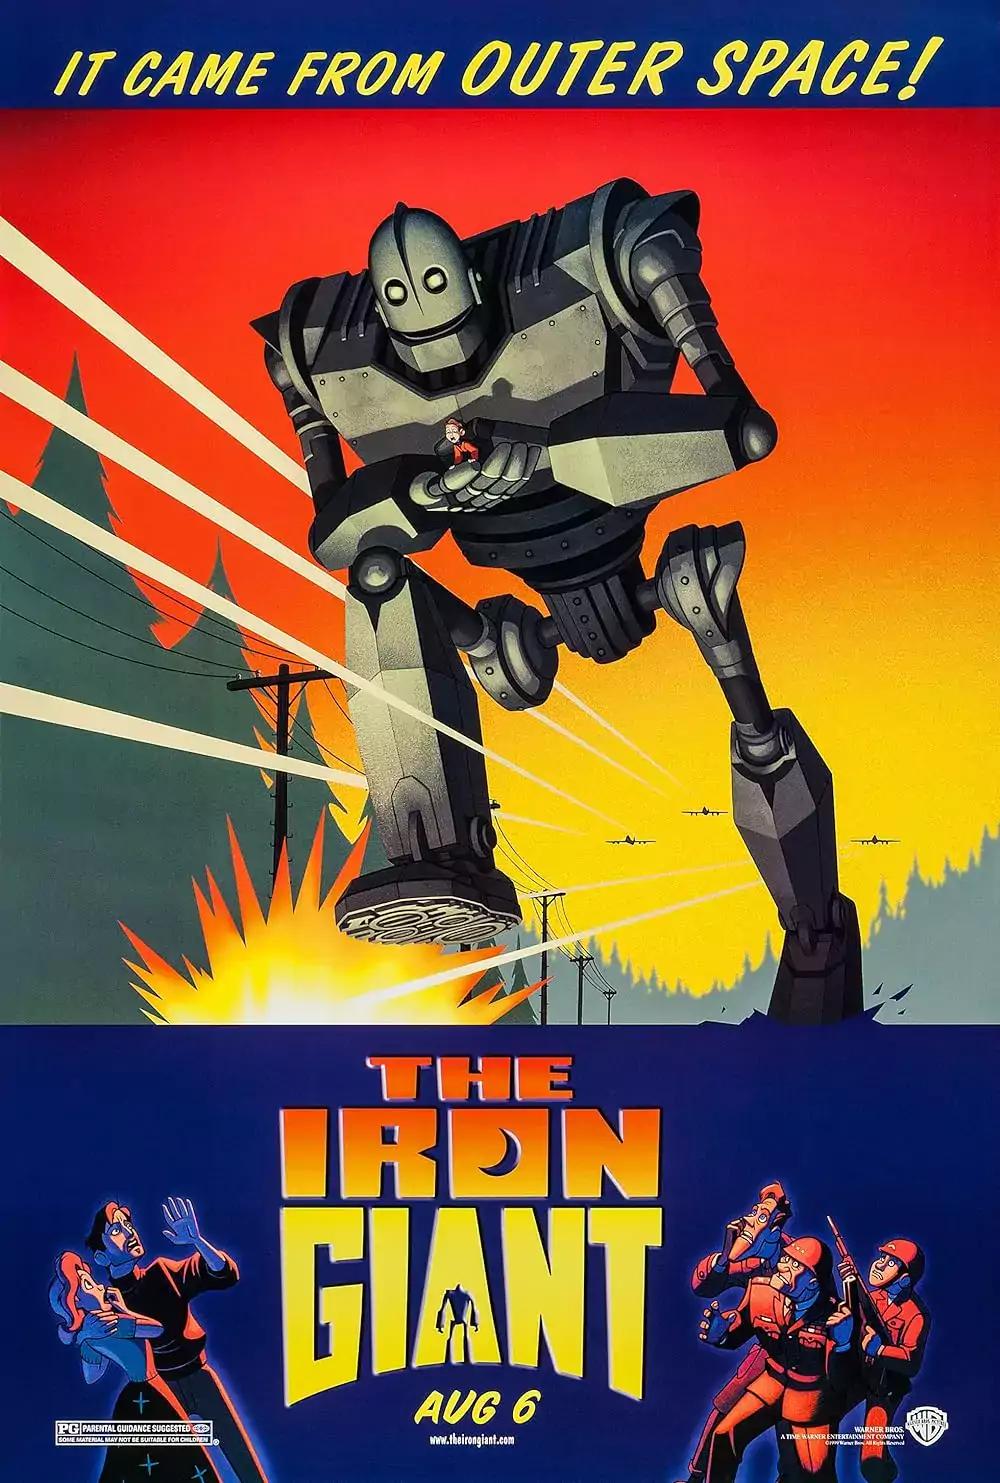 The Iron Giant (1999) - IMDb: 8.1